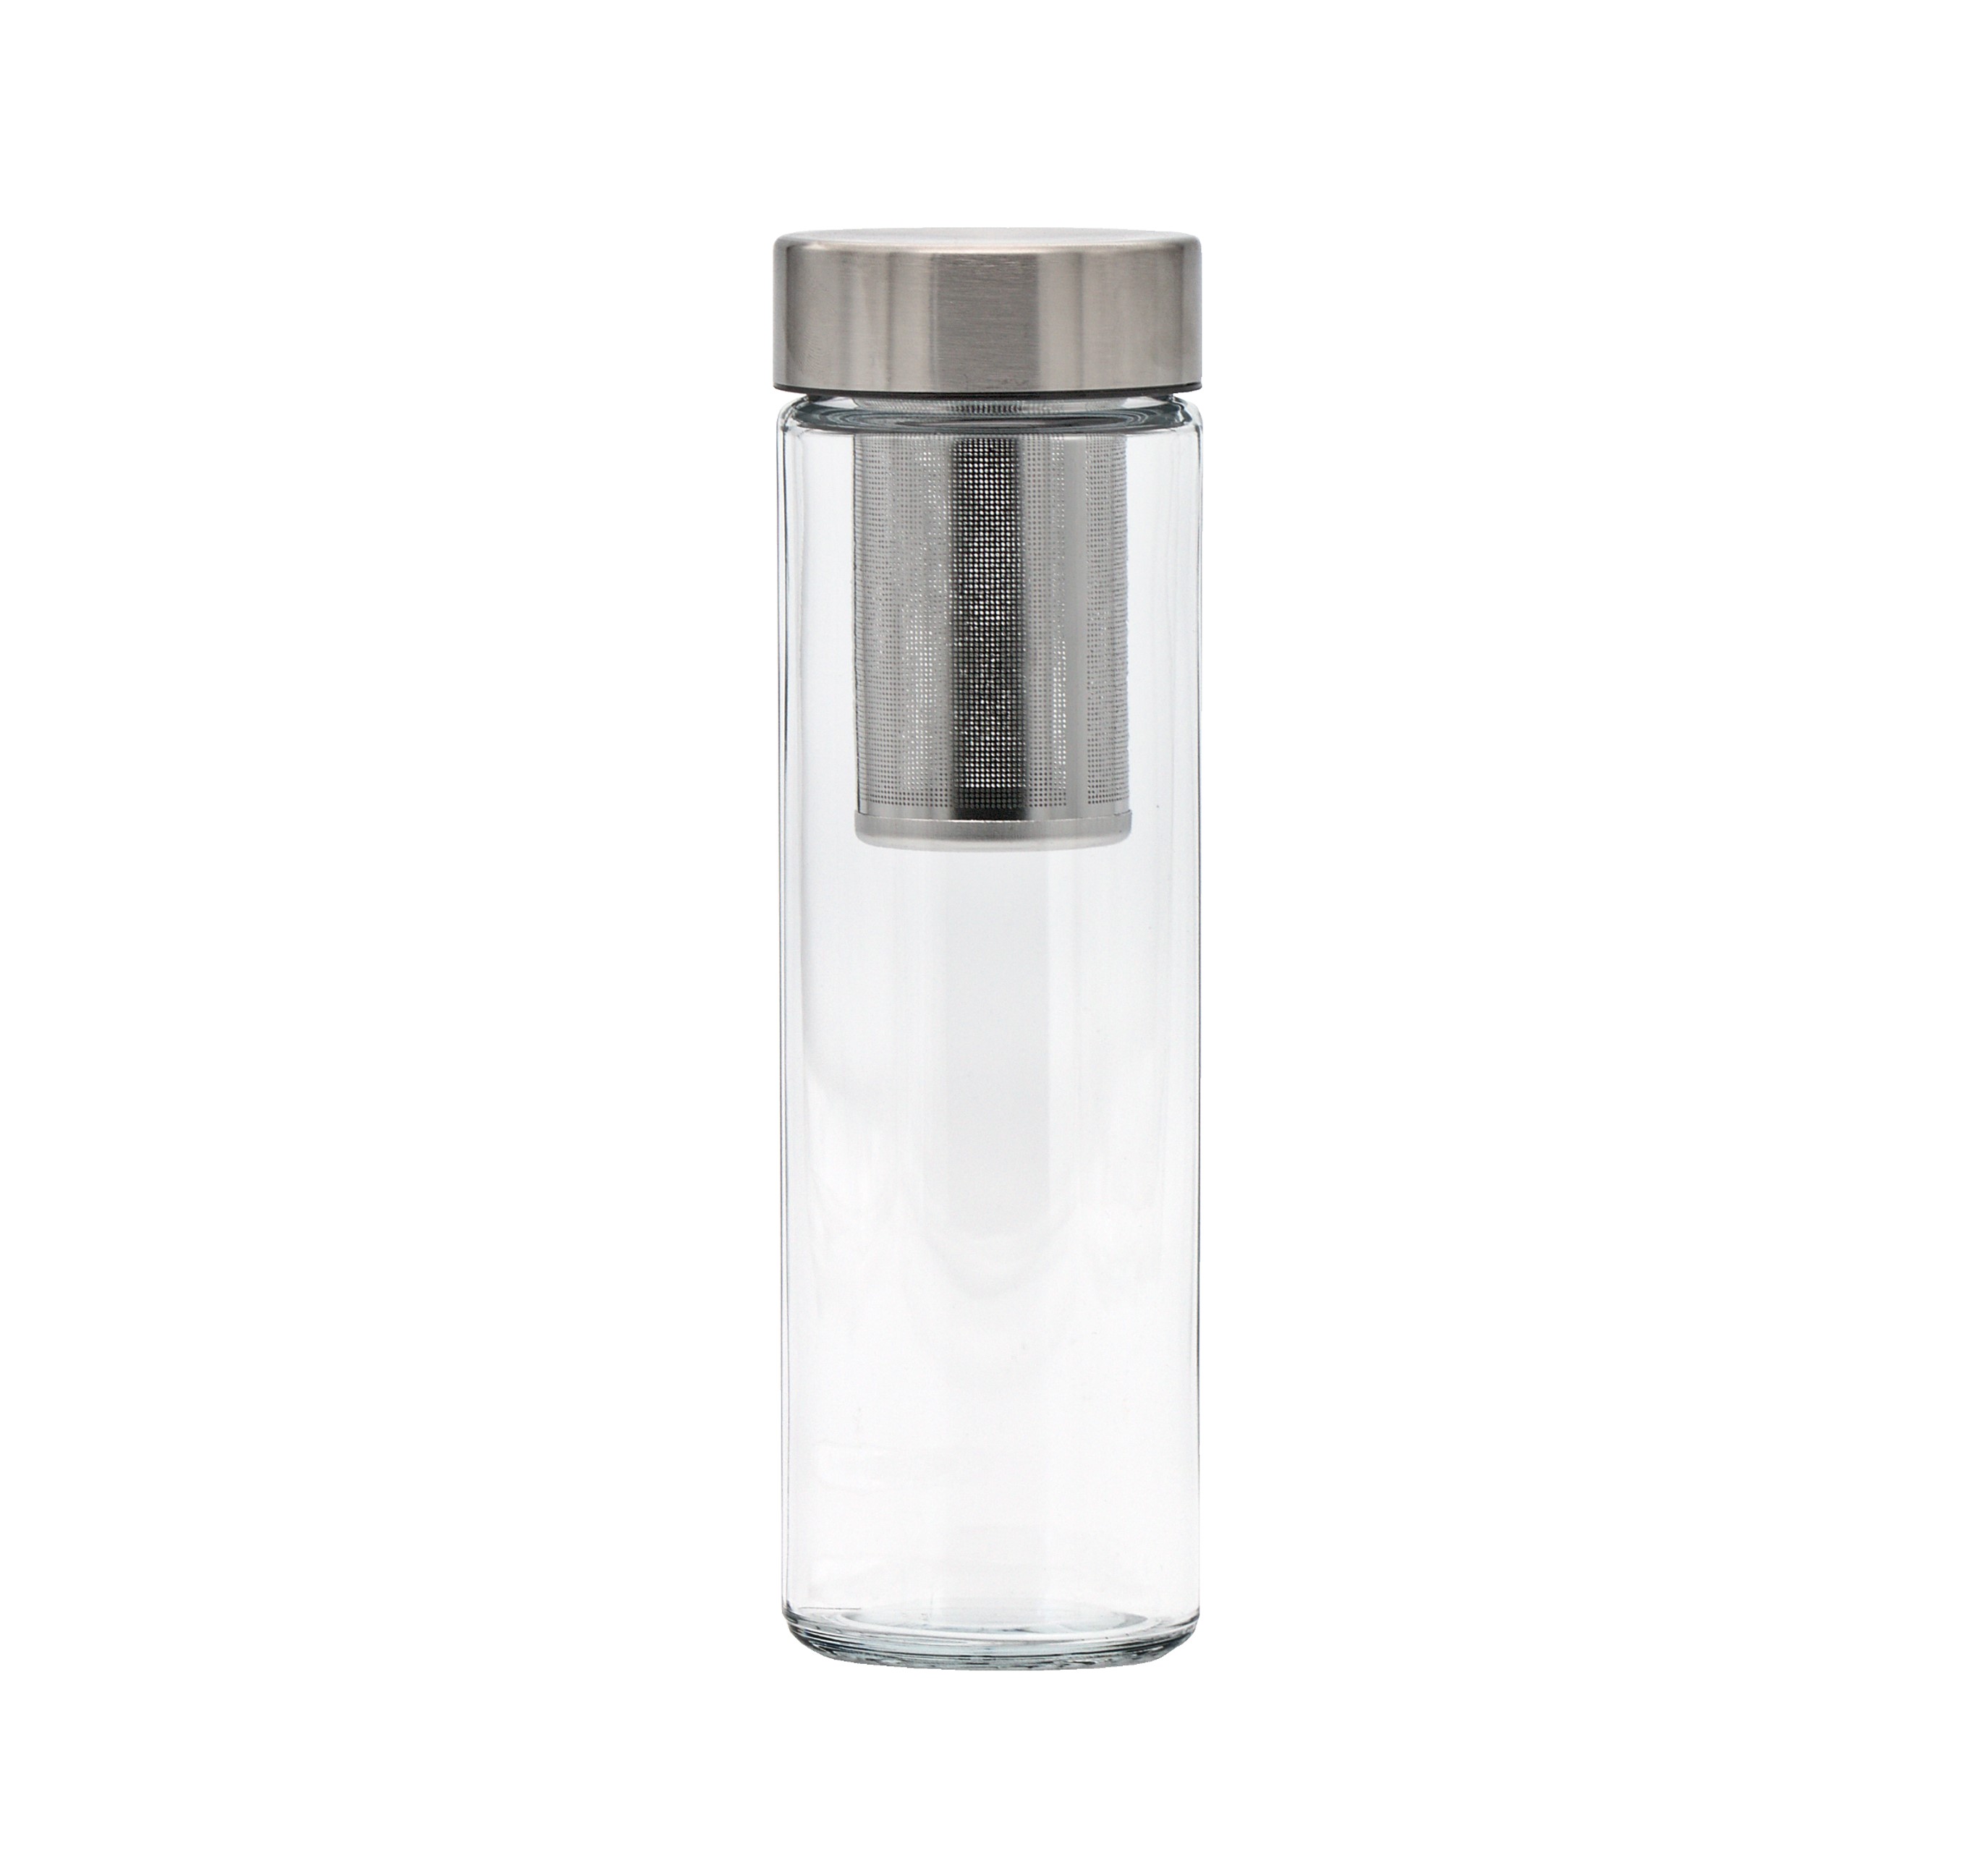 Exklusive SIMAX Trinkflasche aus Borosilikatglas in einfachen zylindrischen Design mit Siebeinsatz und einer Füllmenge von 500 ml